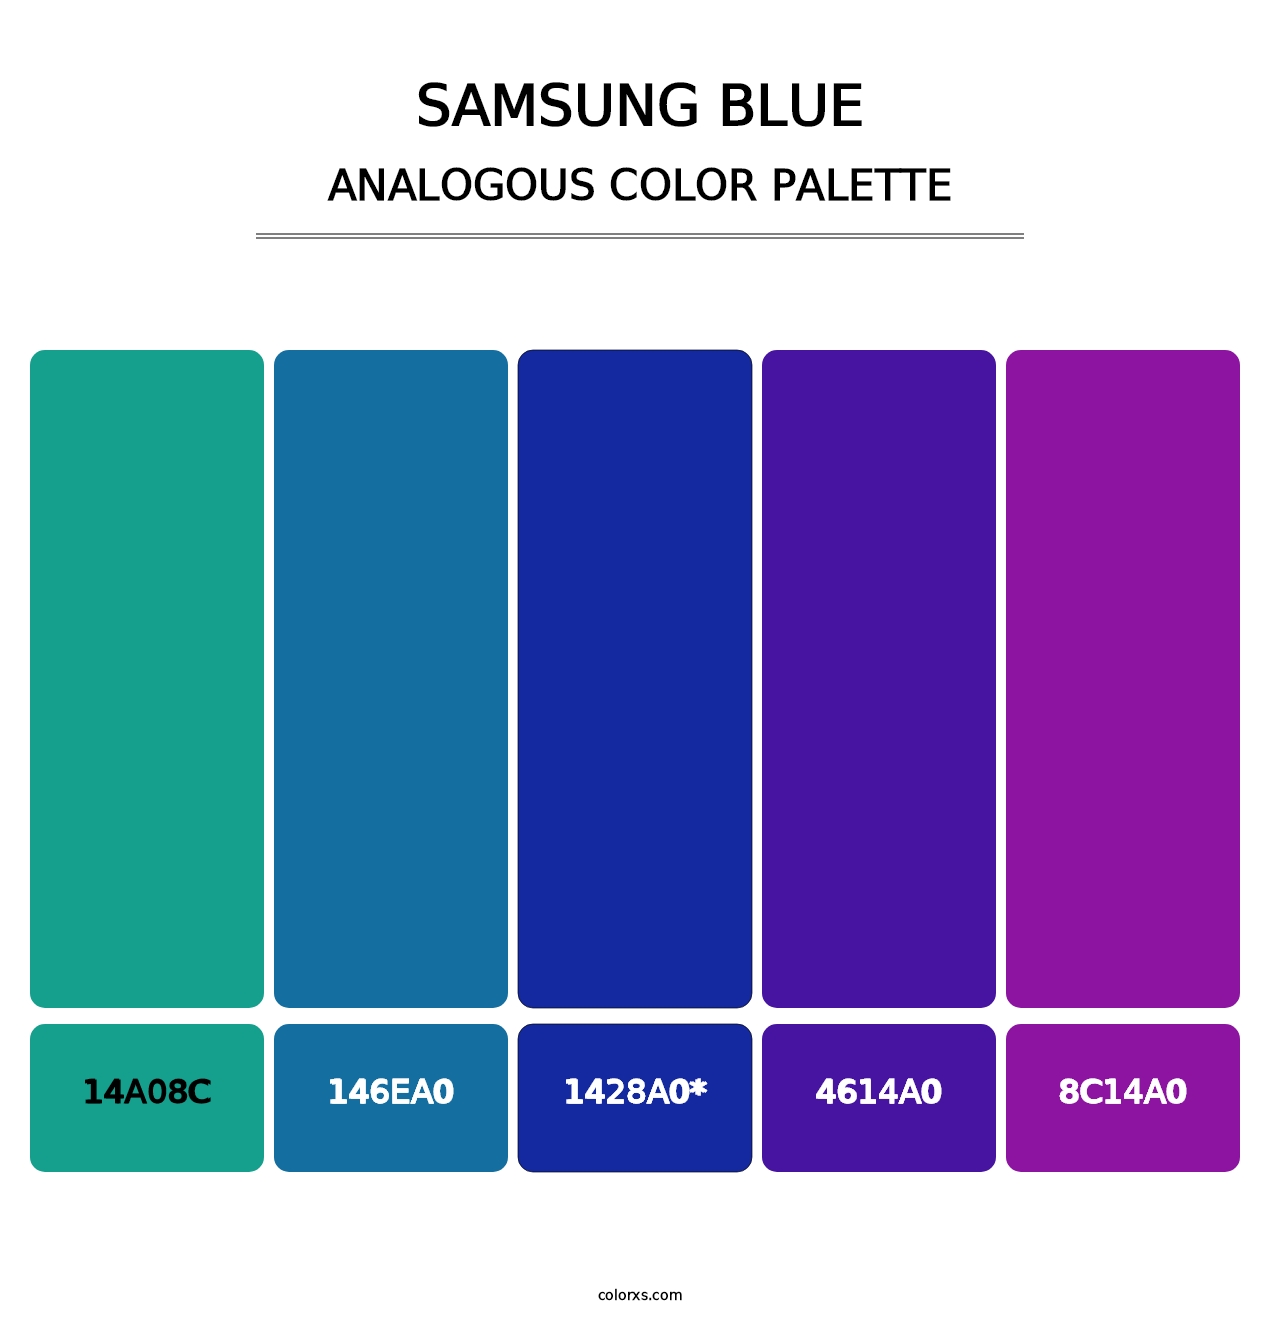 Samsung Blue - Analogous Color Palette